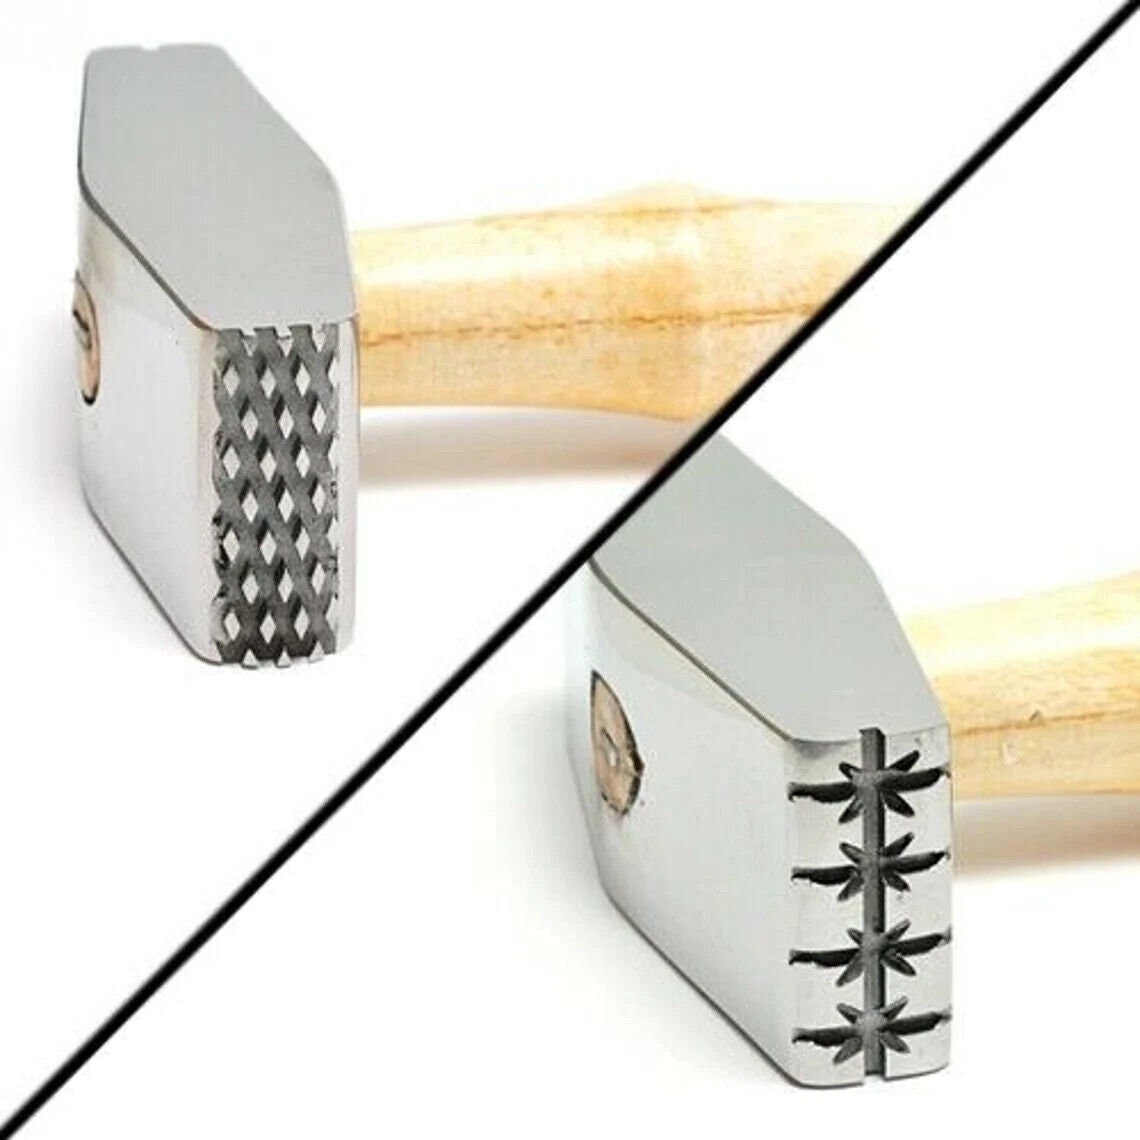 Jewelers/metal Workers Texturing Hammer Dipples/narrow Stripe 02 SALE 